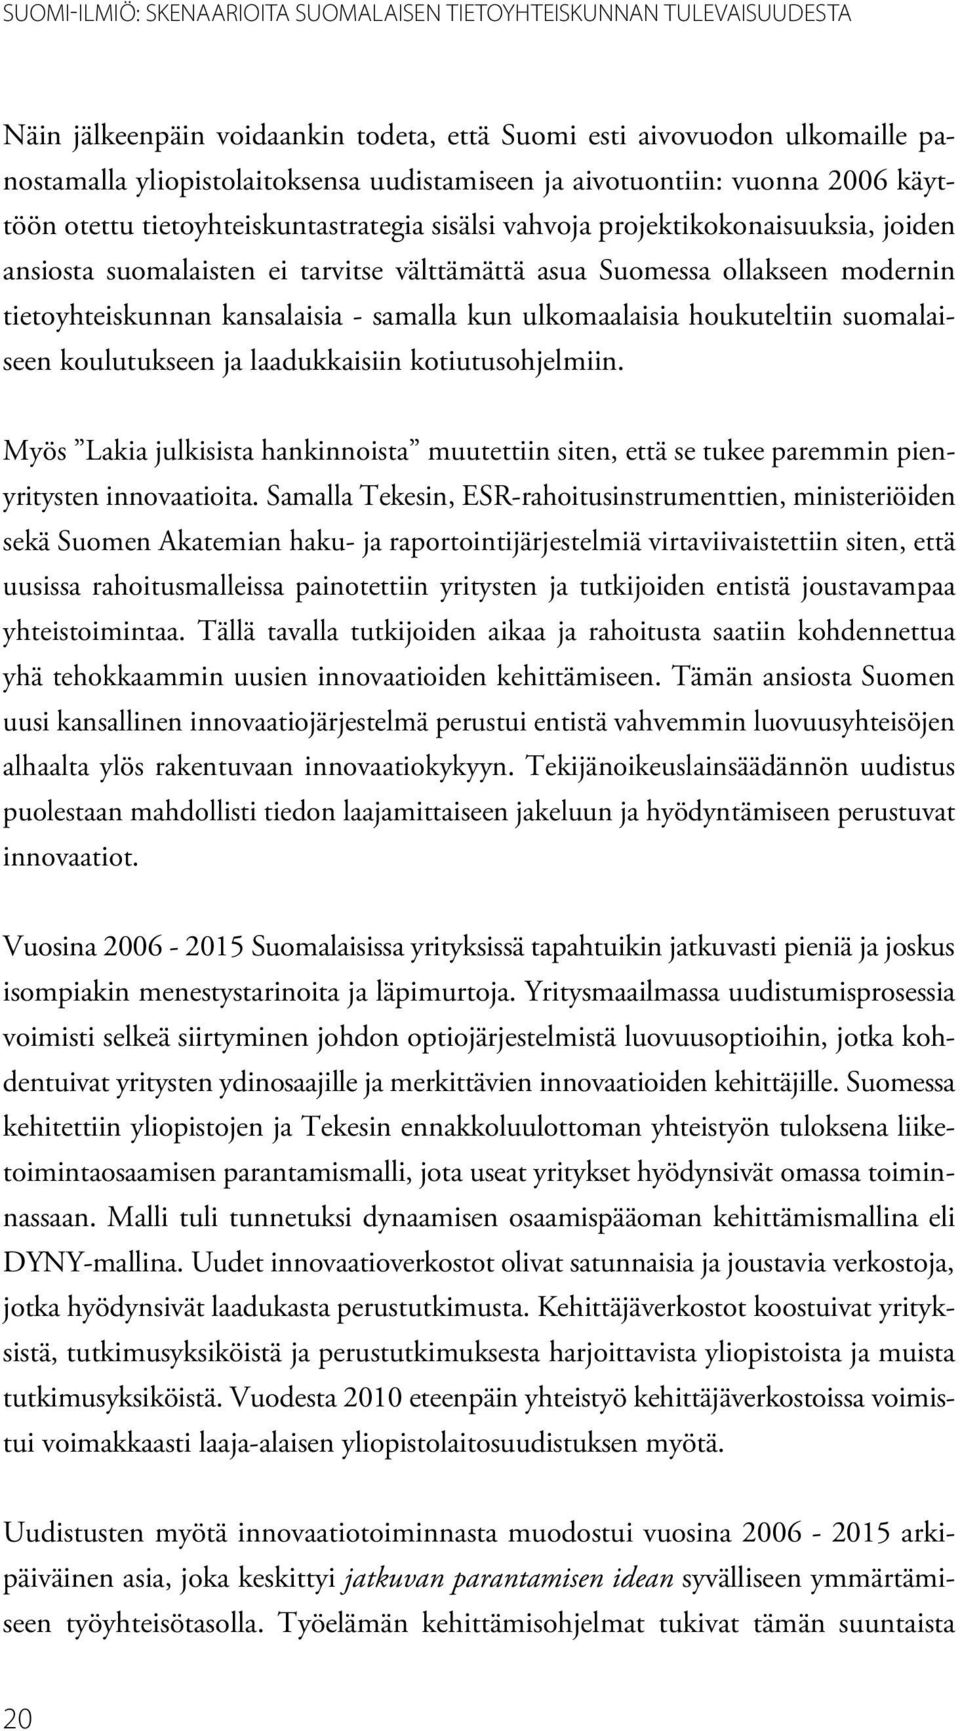 tietoyhteiskunnan kansalaisia - samalla kun ulkomaalaisia houkuteltiin suomalaiseen koulutukseen ja laadukkaisiin kotiutusohjelmiin.